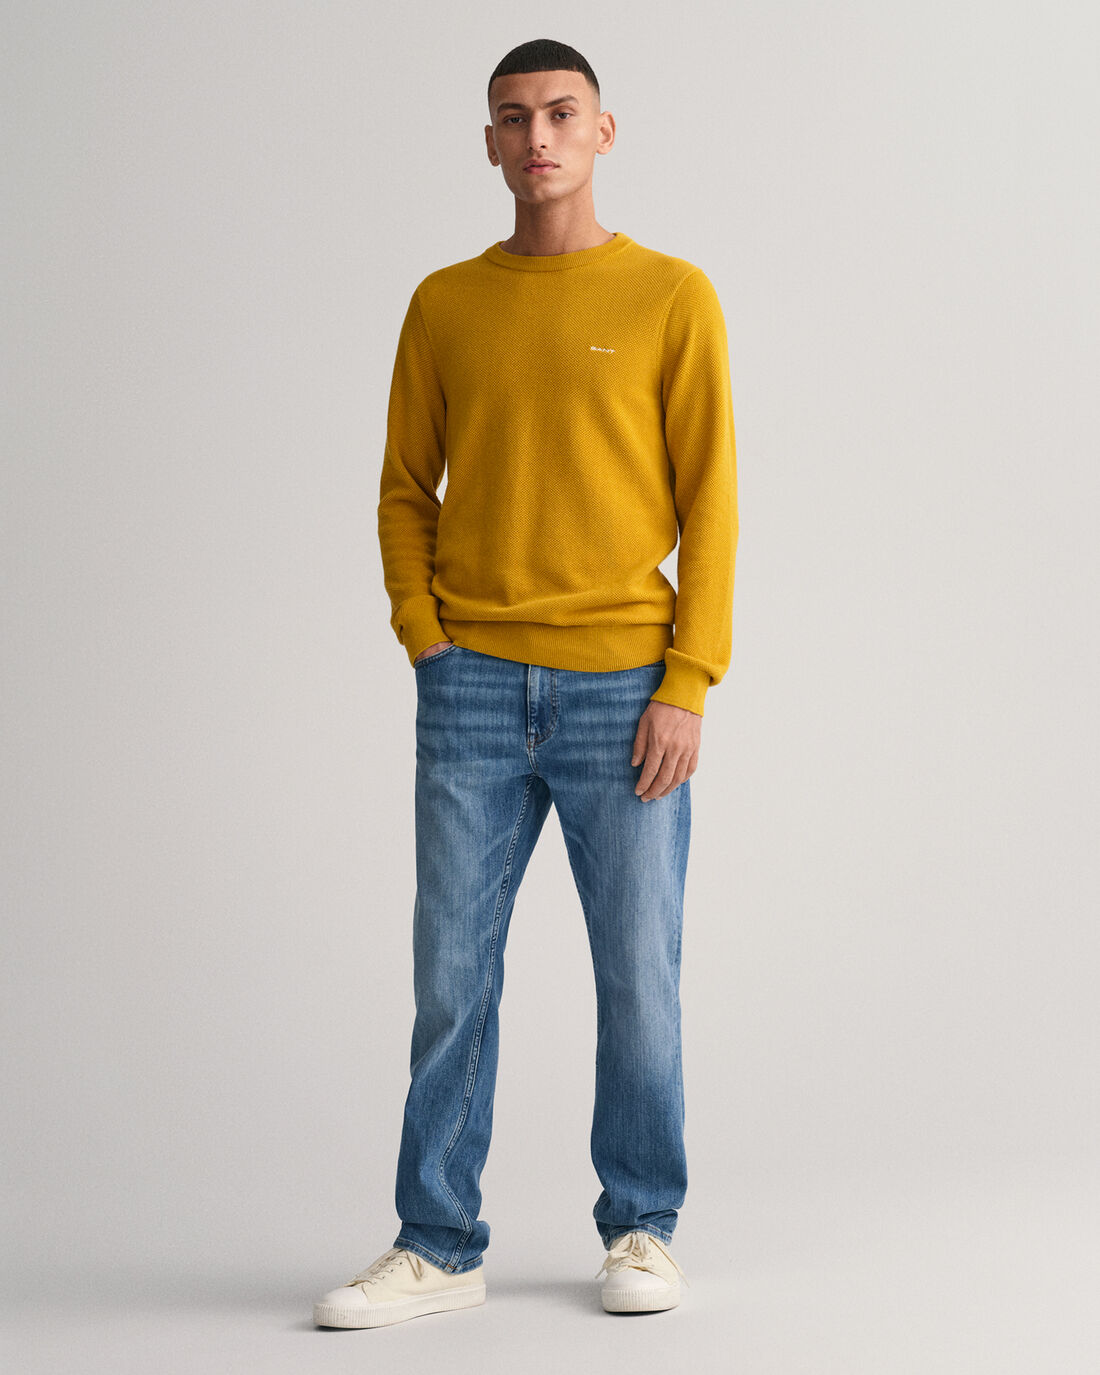 Cotton Piqué Crew Neck Sweater - Dark Mustard Yellow